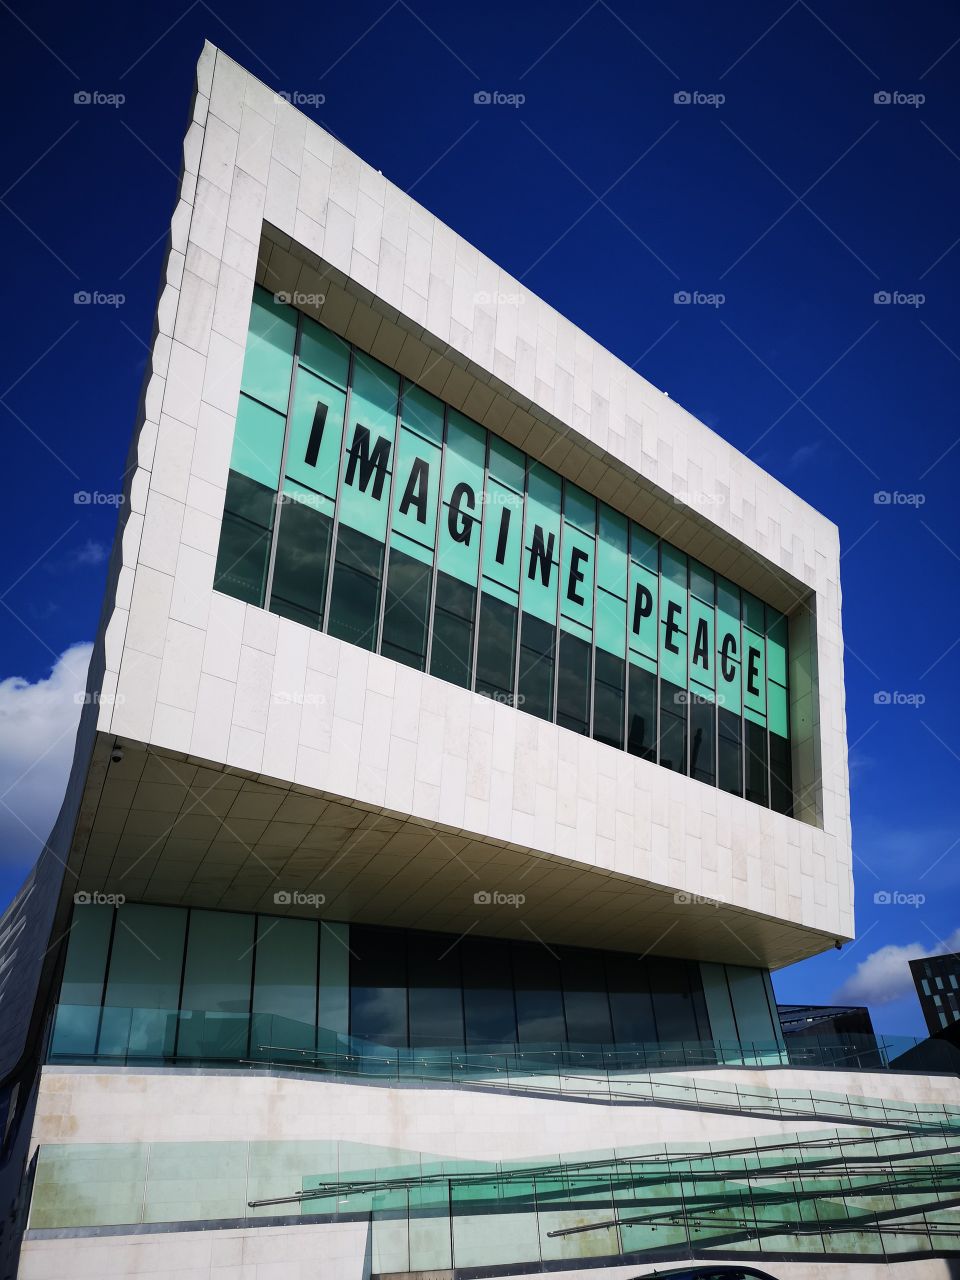 imagine peace Liverpool